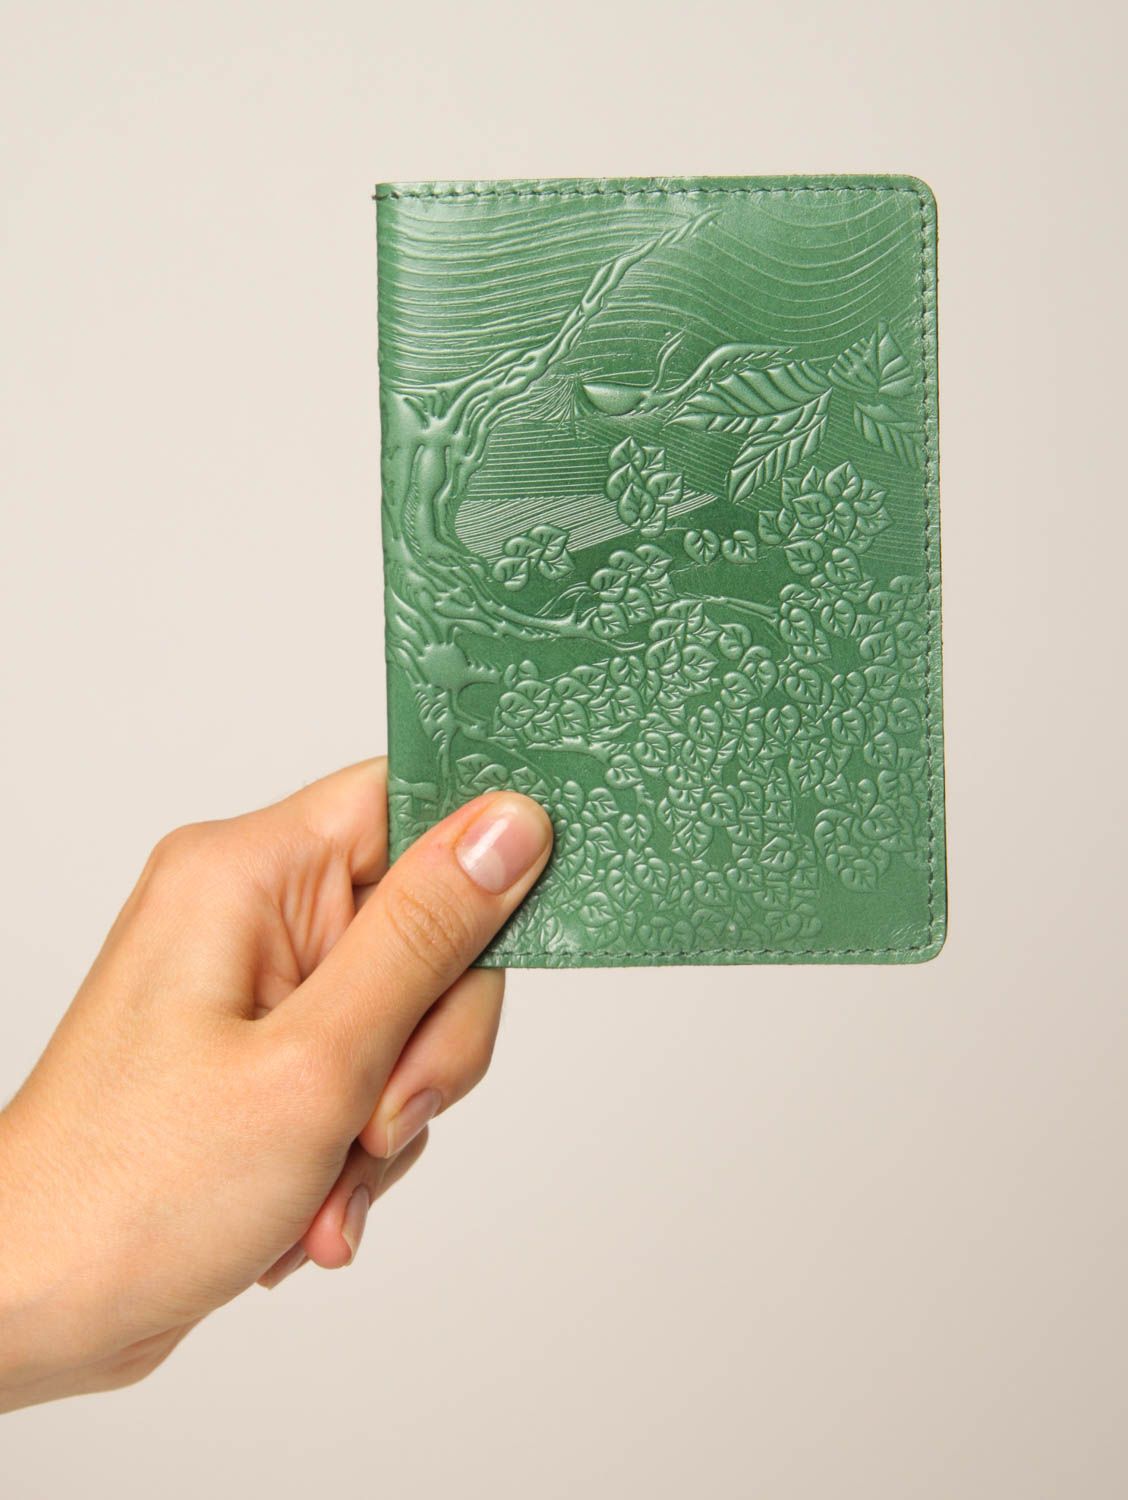 Оригинальный подарок ручной работы обложка на паспорт аксессуар из кожи фото 2